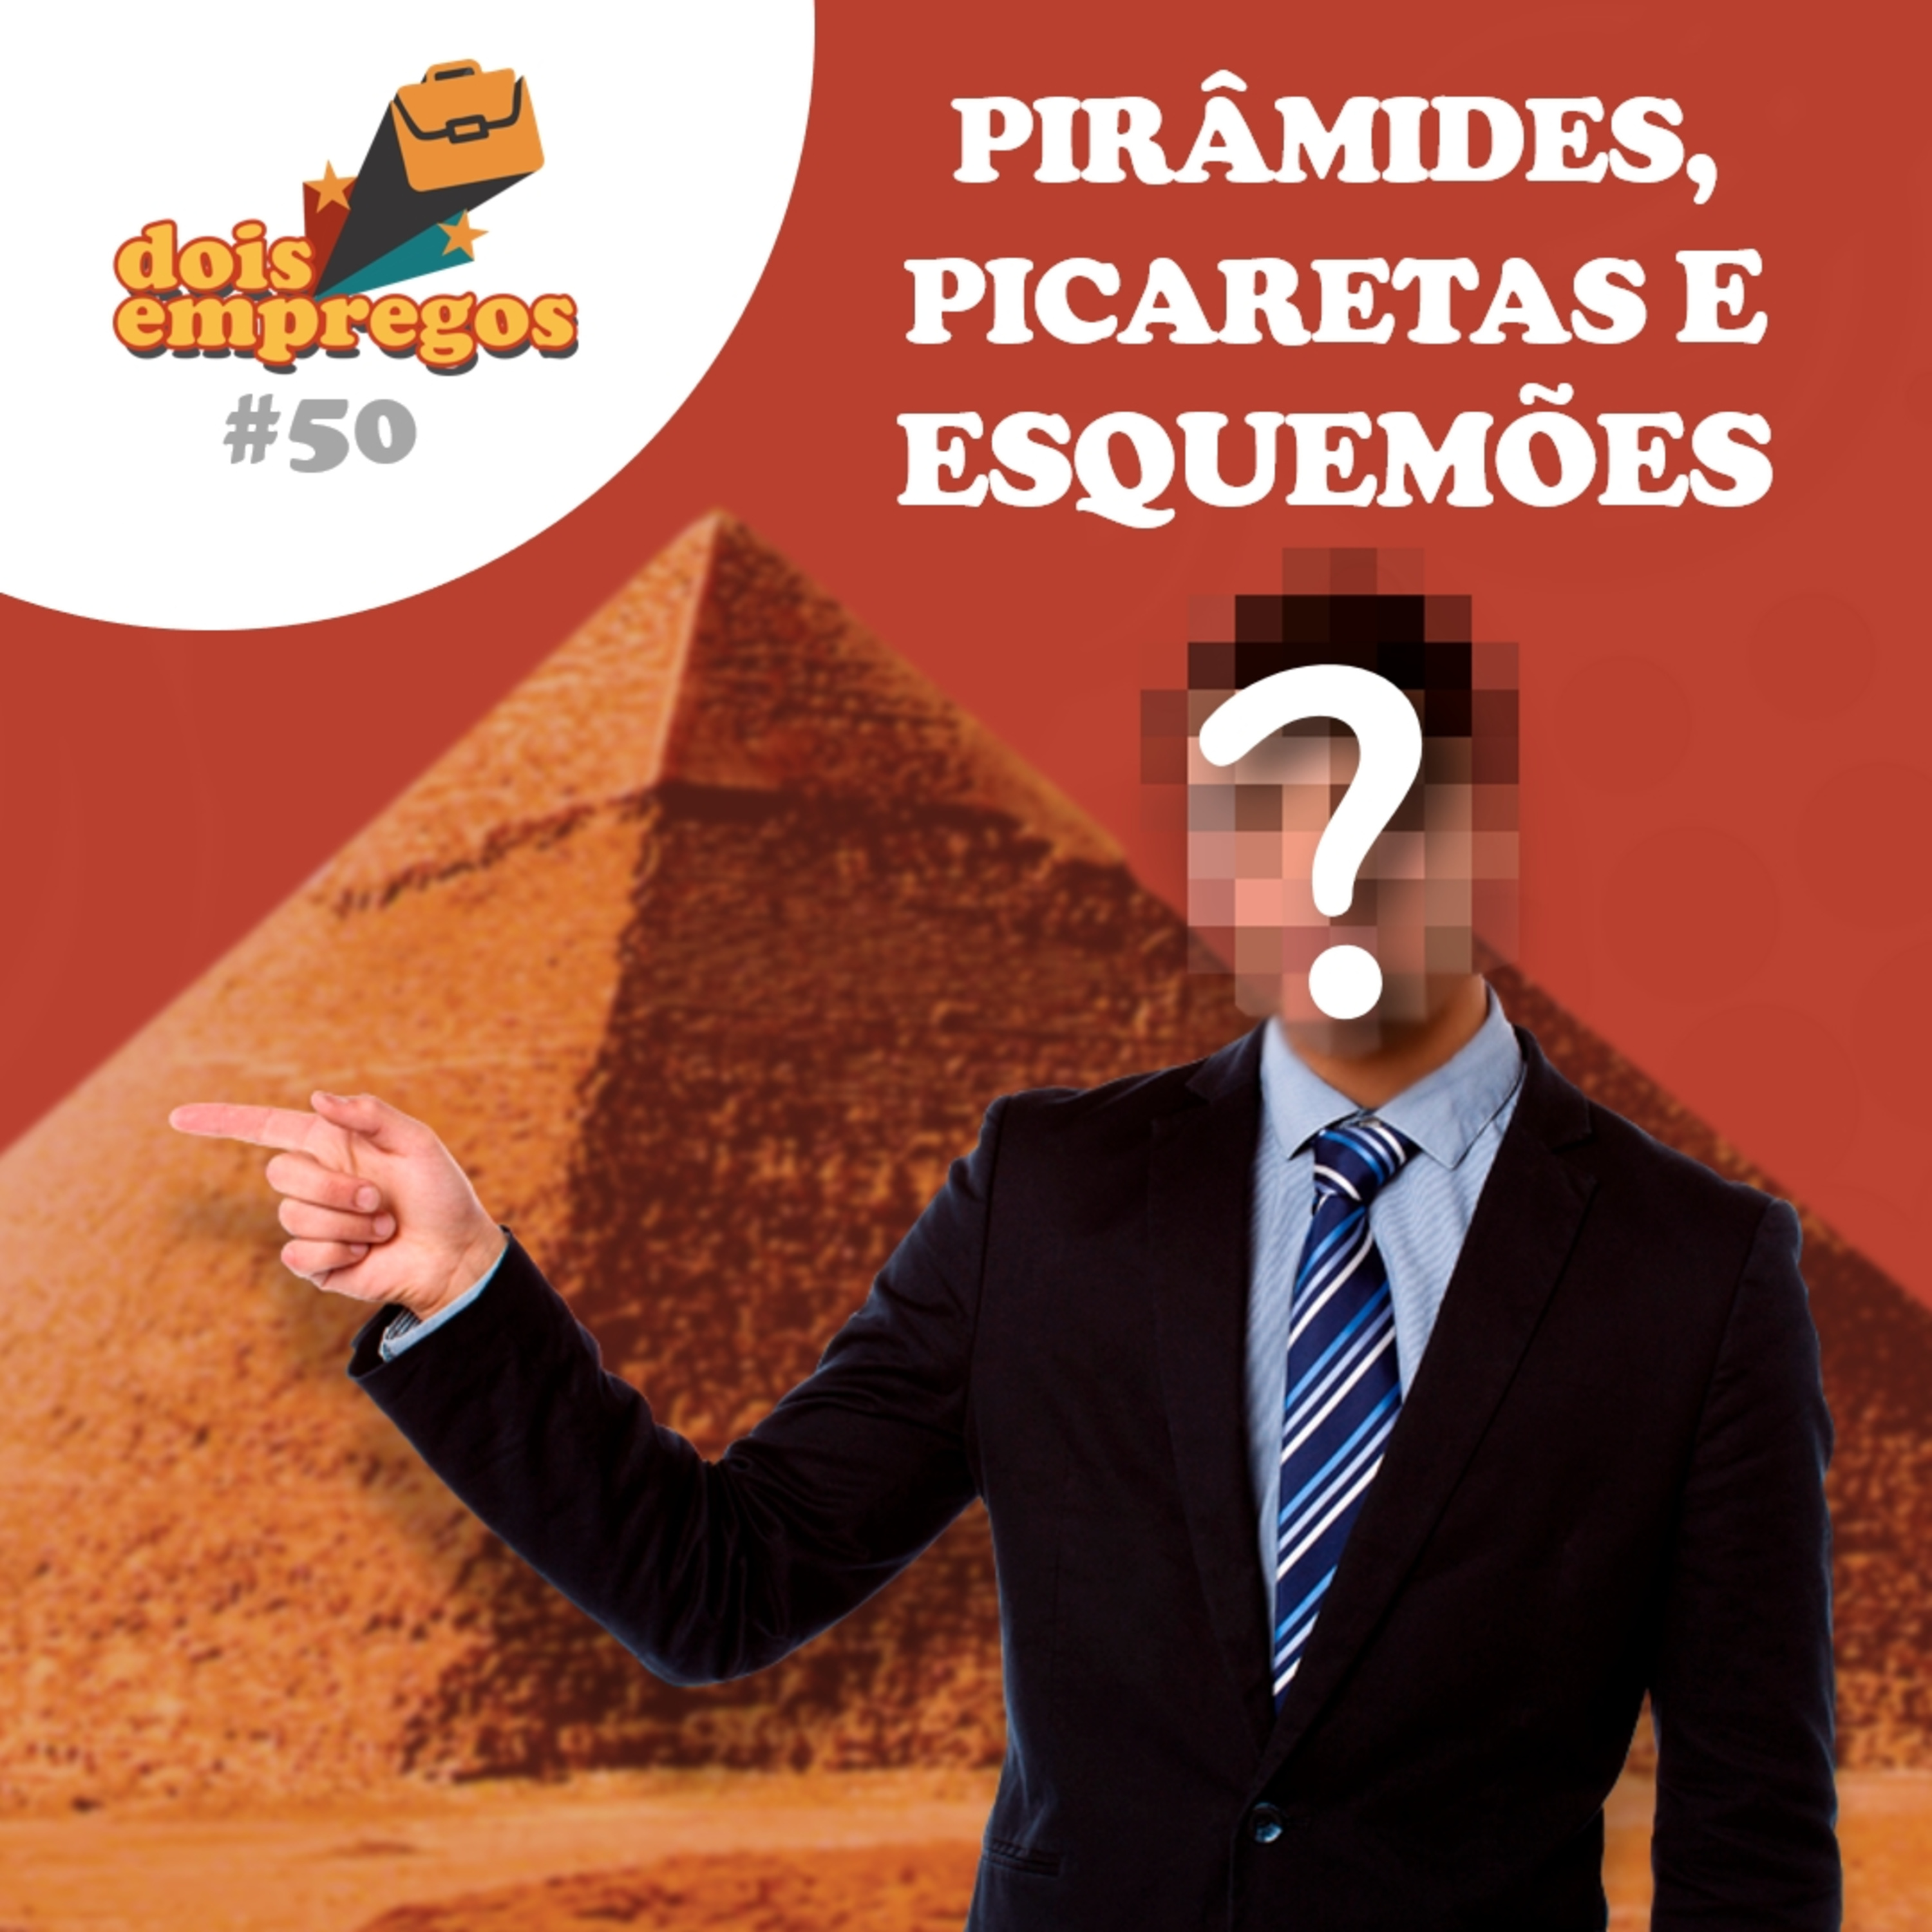 #50 - Pirâmides, Picaretas e Esquemões! (OUÇA E FIQUE RICO)